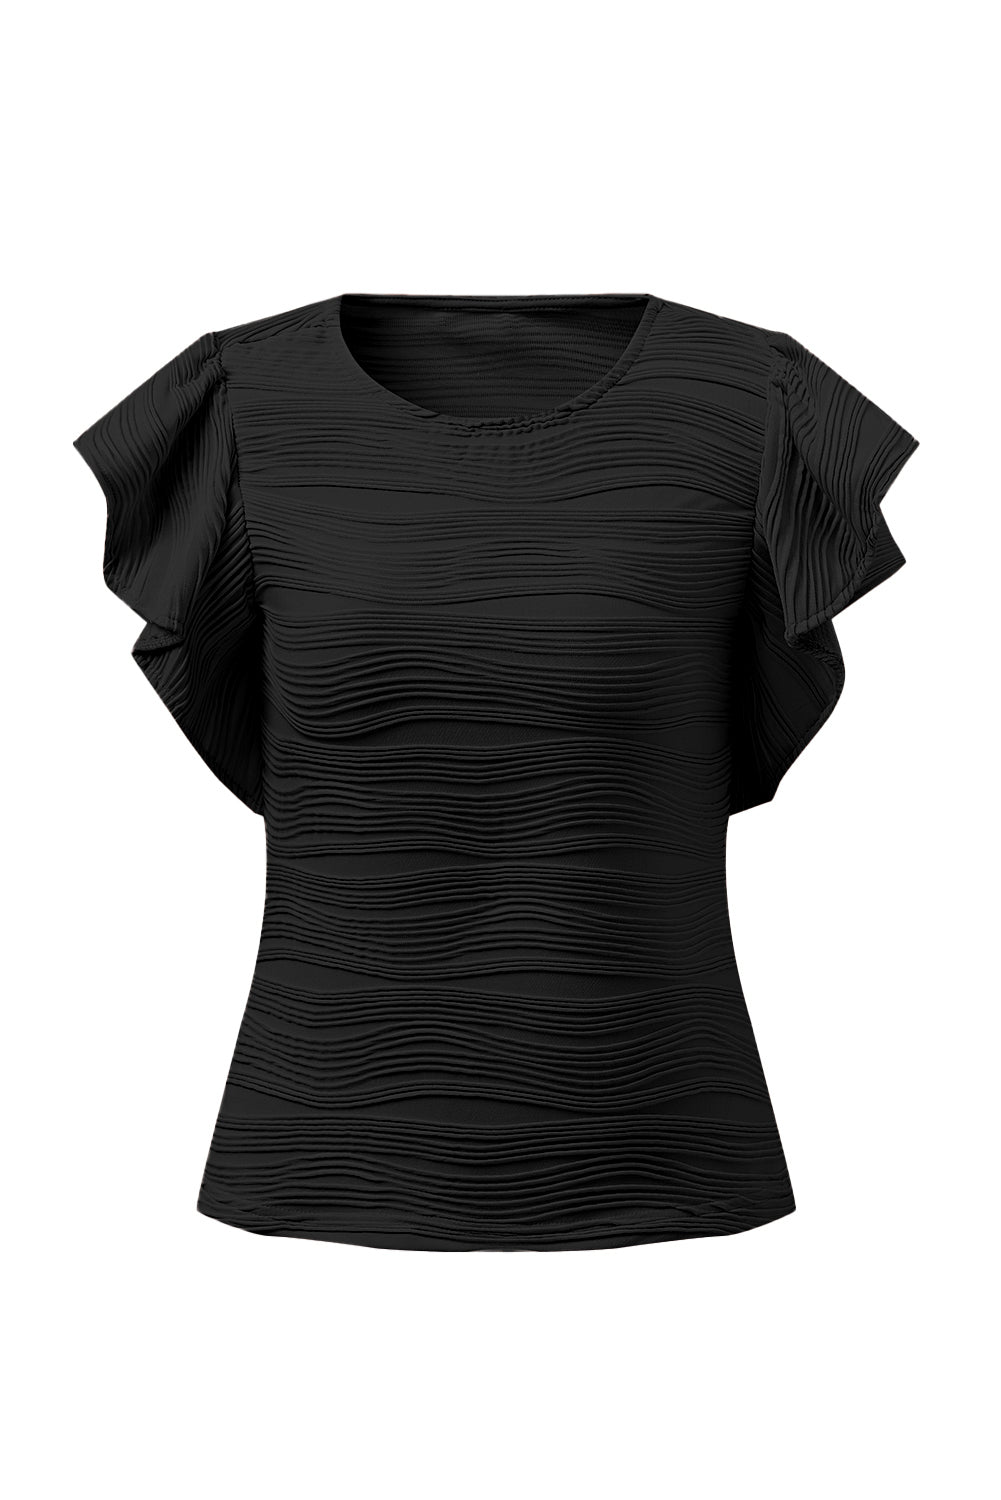 Crna majica s rukavima s valovitom teksturom